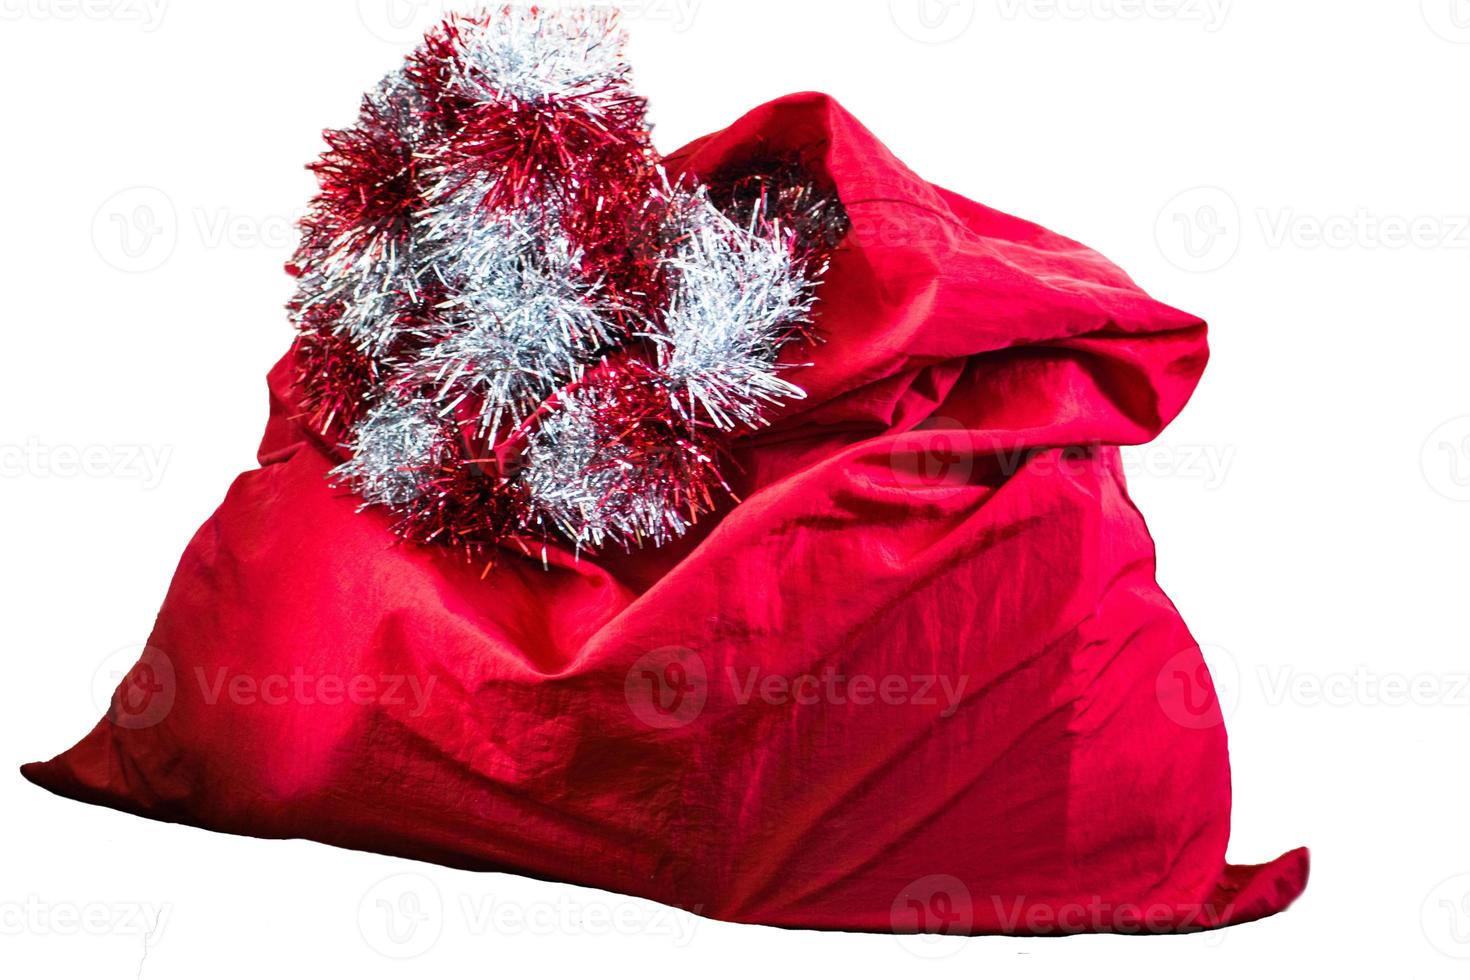 borsa rossa di Babbo Natale, isolata su sfondo bianco. foto